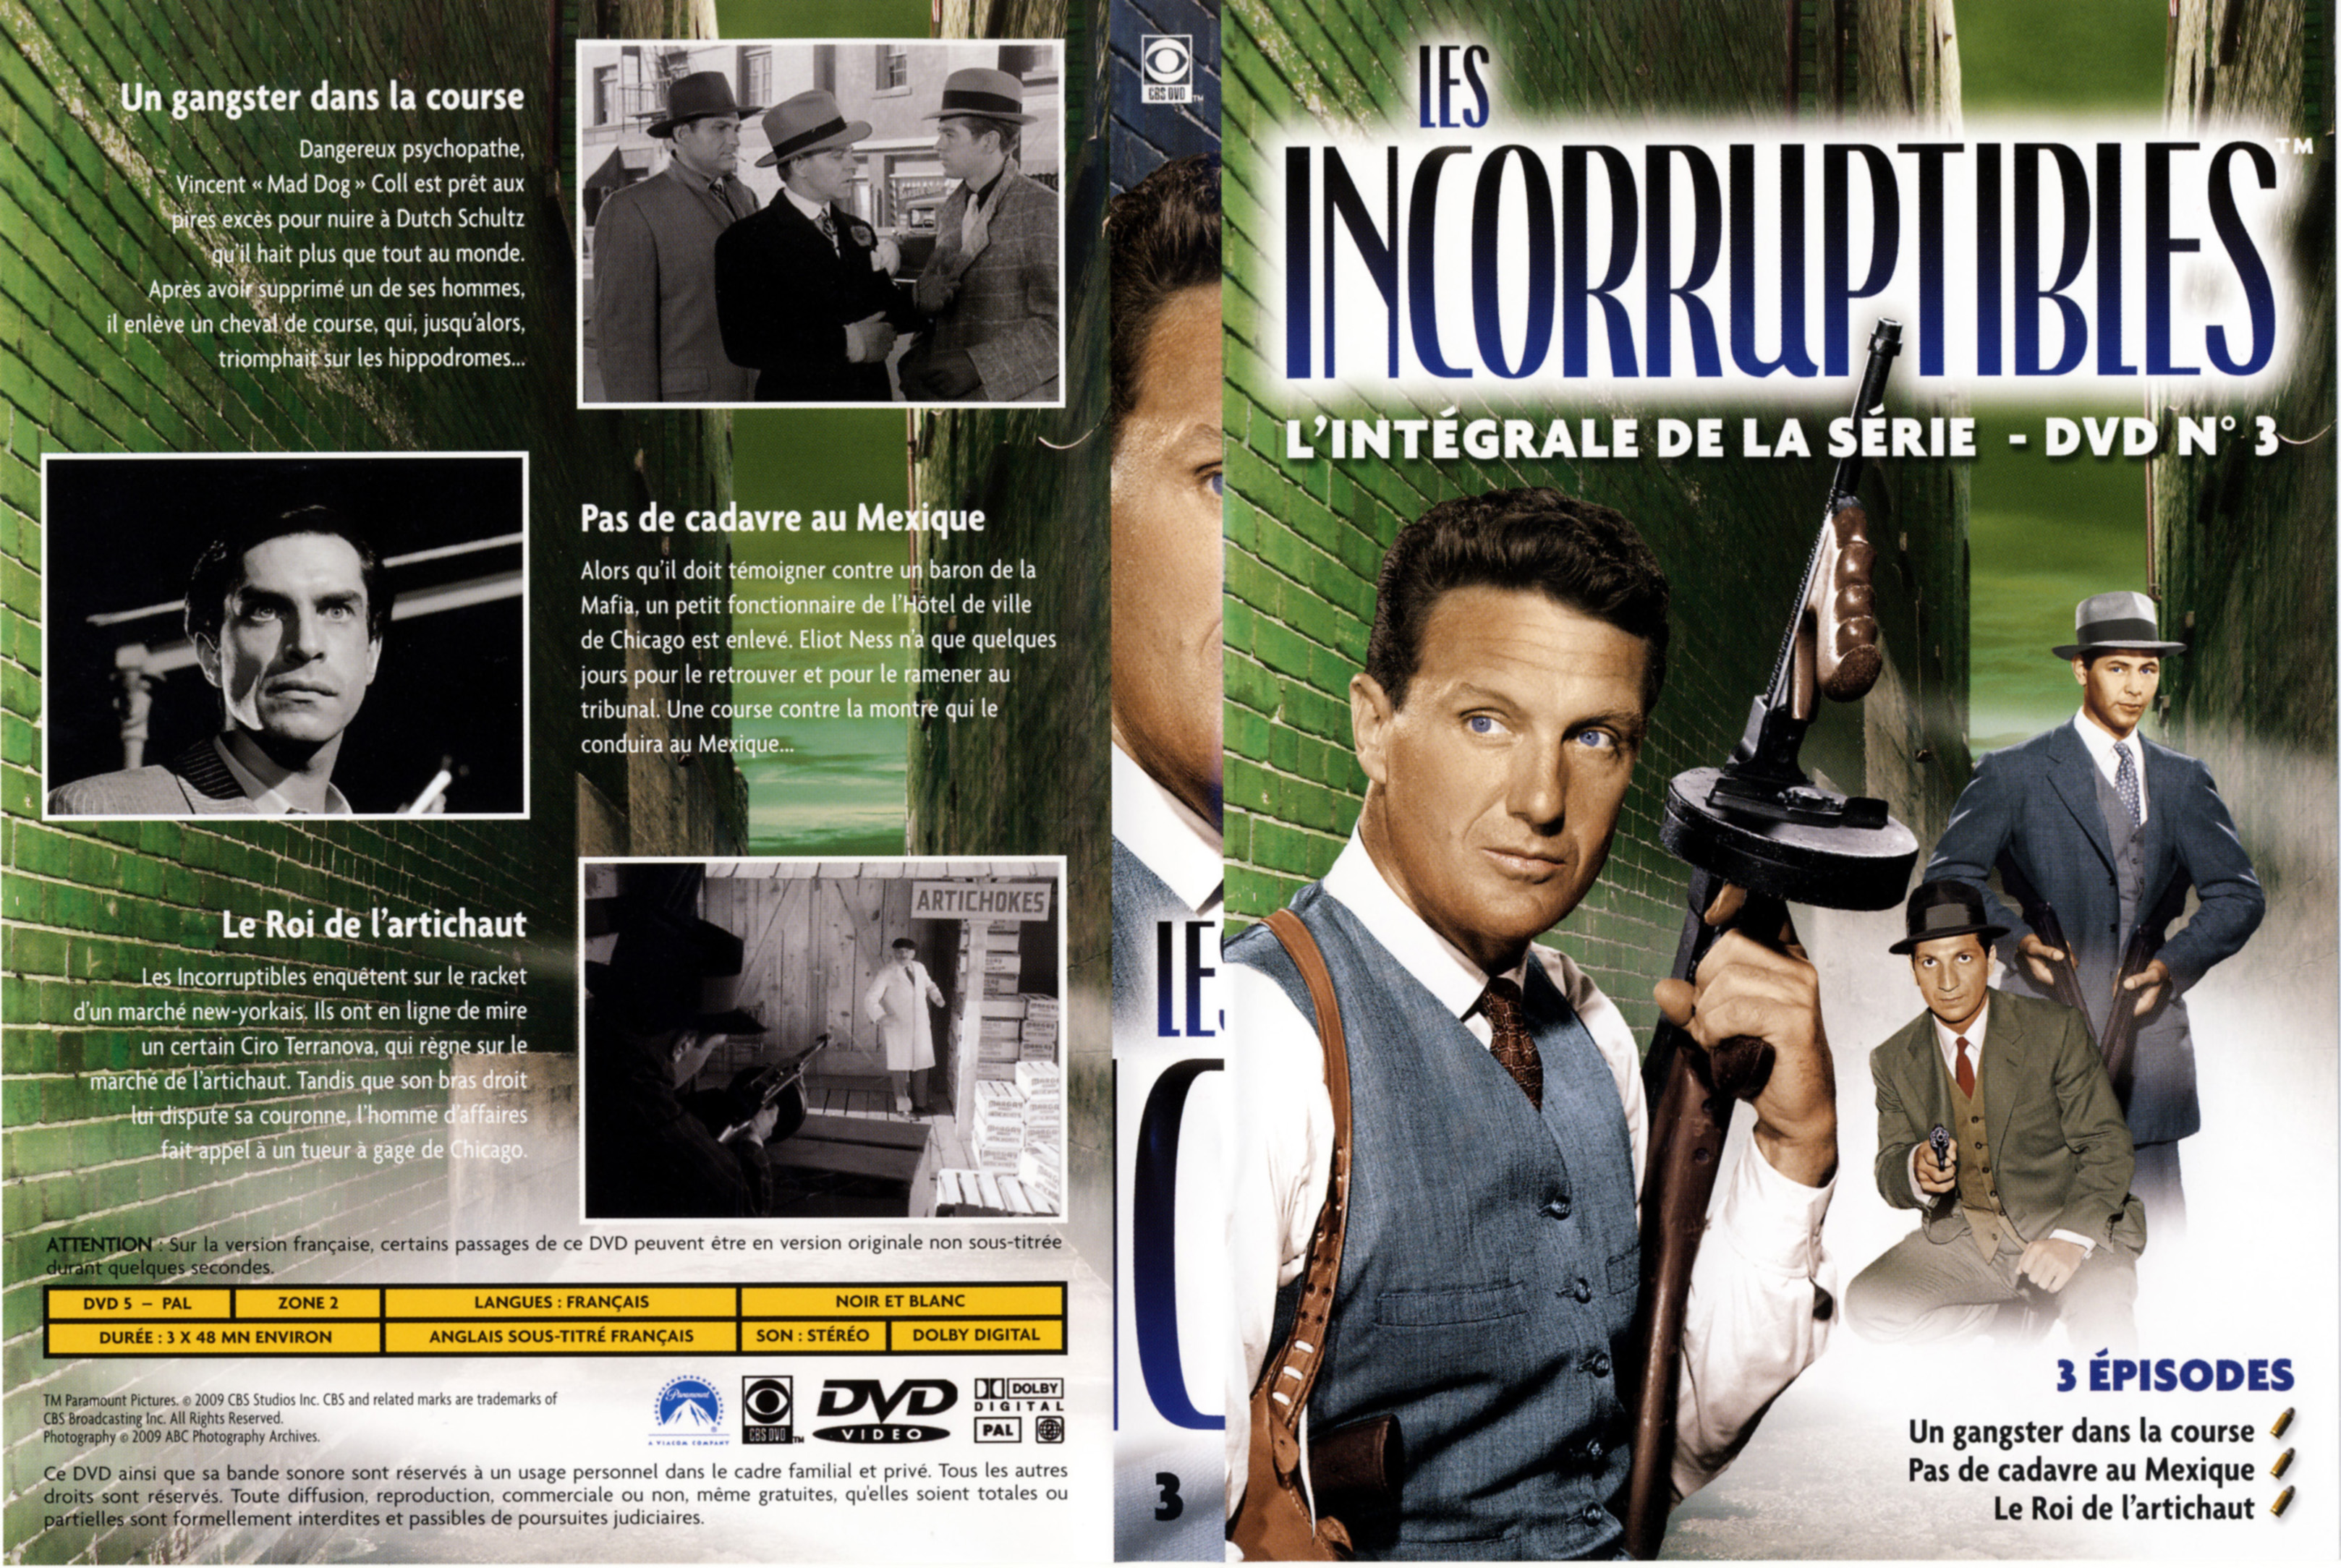 Jaquette DVD Les incorruptibles intgrale DVD 03